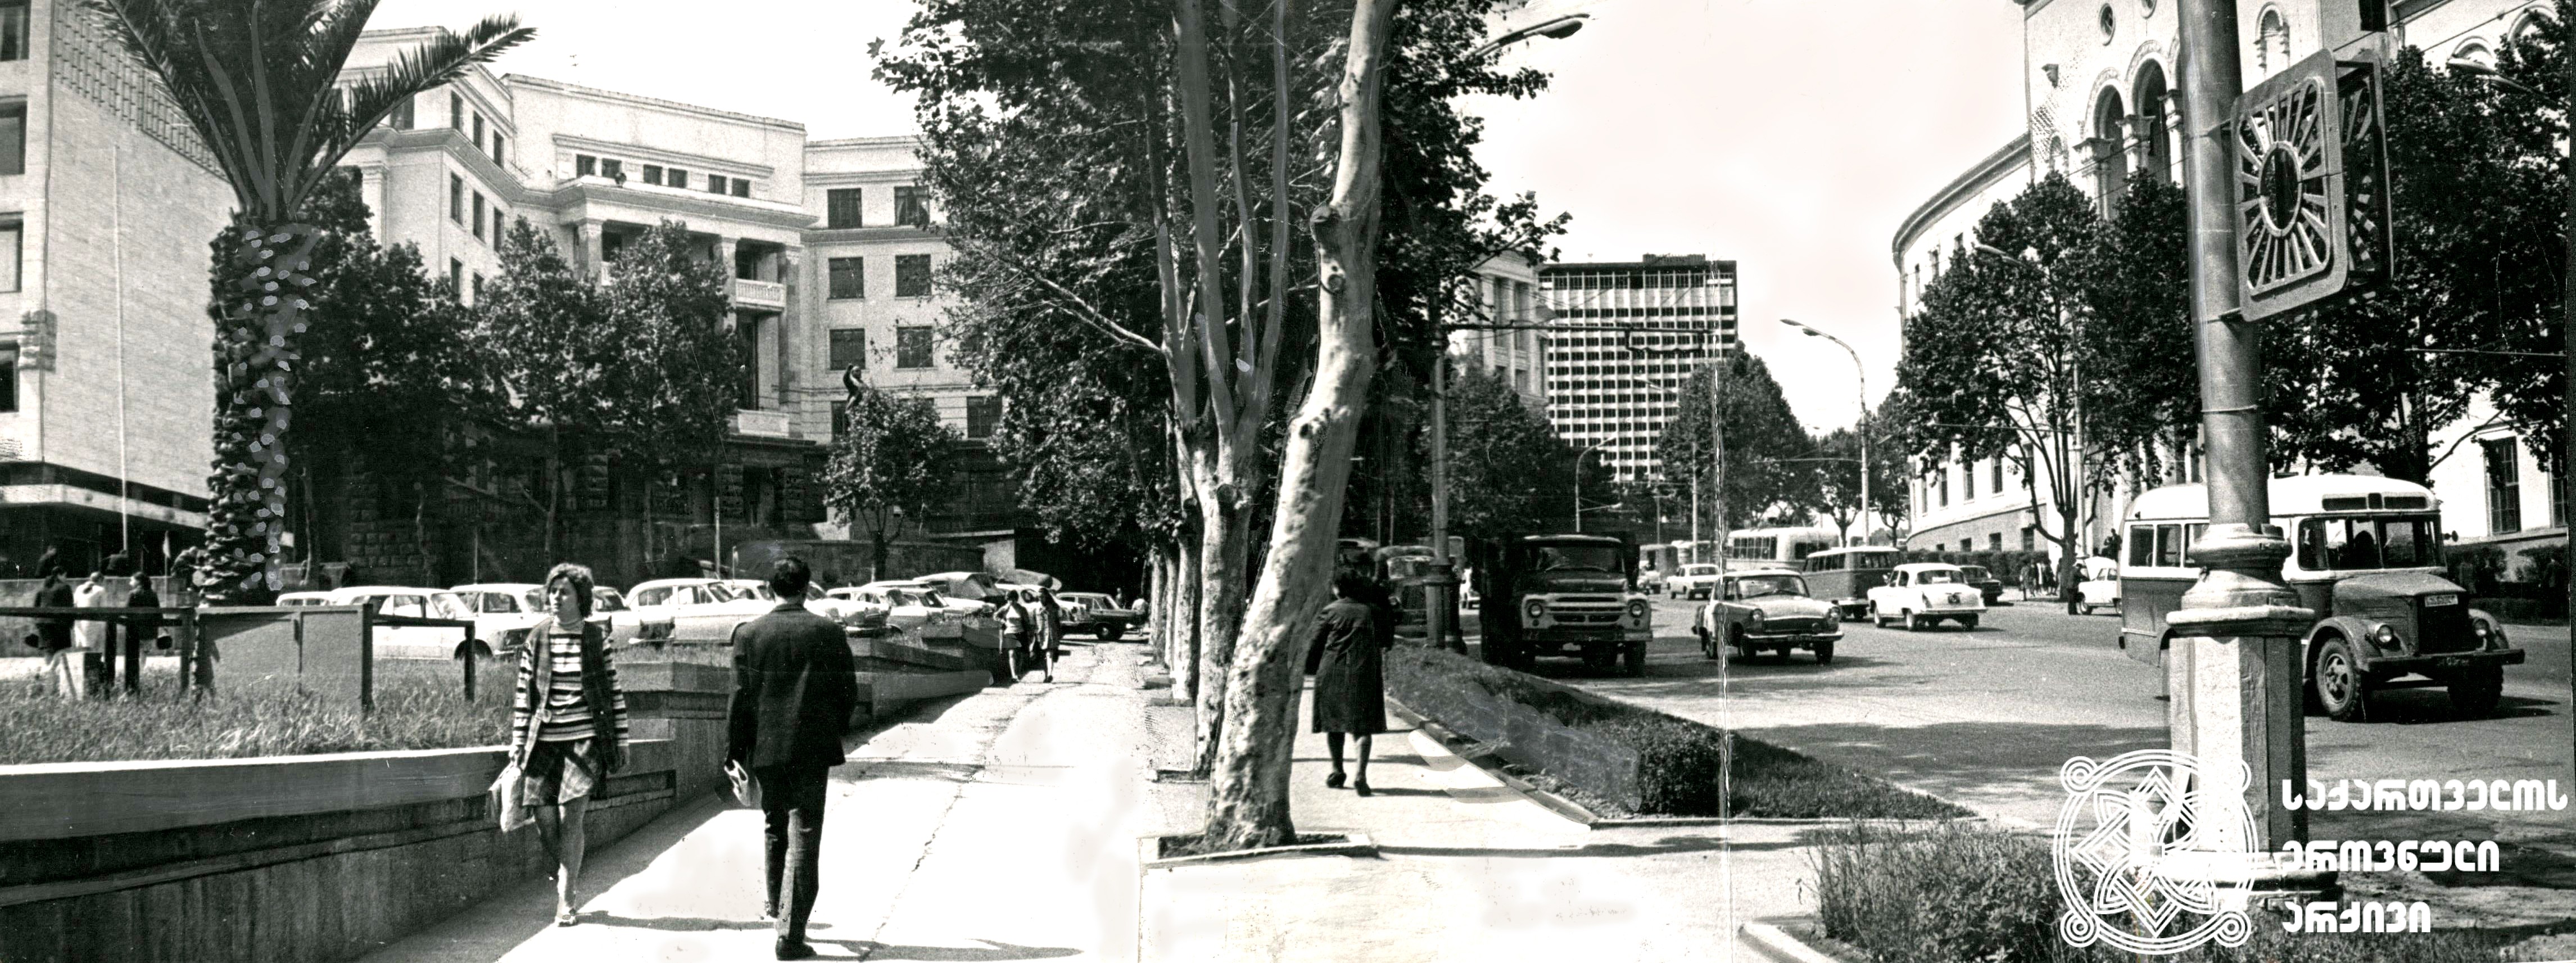 ლენინის ქუჩა (დღევანდელი კოსტავას ქუჩა), 1960-იანი წლები.
<br>დაცულია გიორგი ბეჟანიშვილის ფონდში.
<br>Lenini Street (today’s Kostava Street), 1960s.
<br>Preserved in Giorgi Bezhanishvili’s fonds.